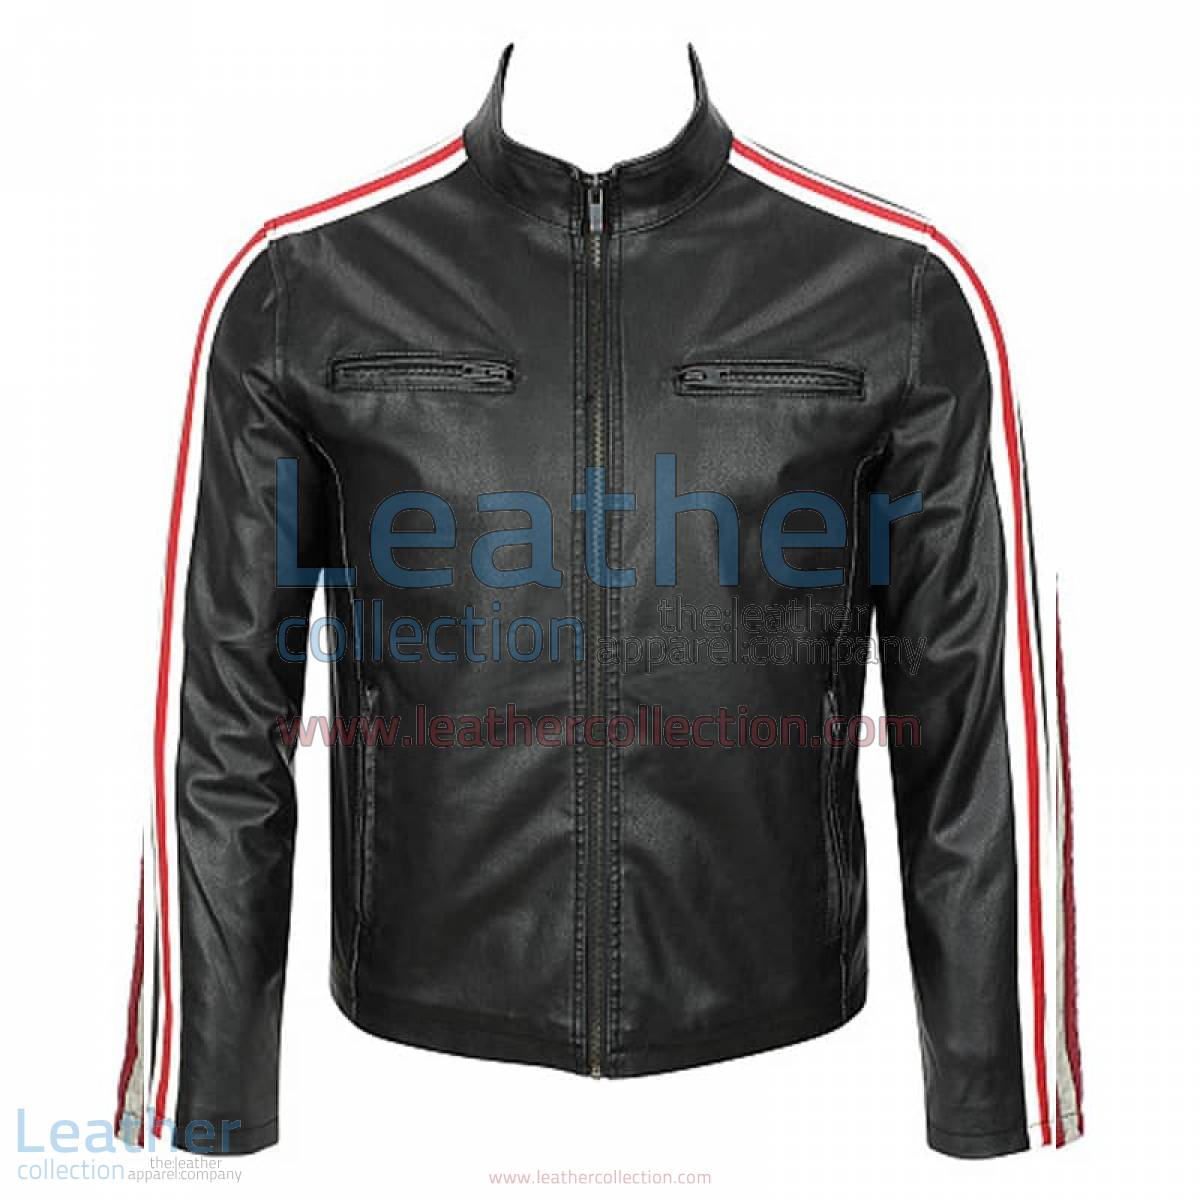 Leather Motorcycle Fashion Jacket